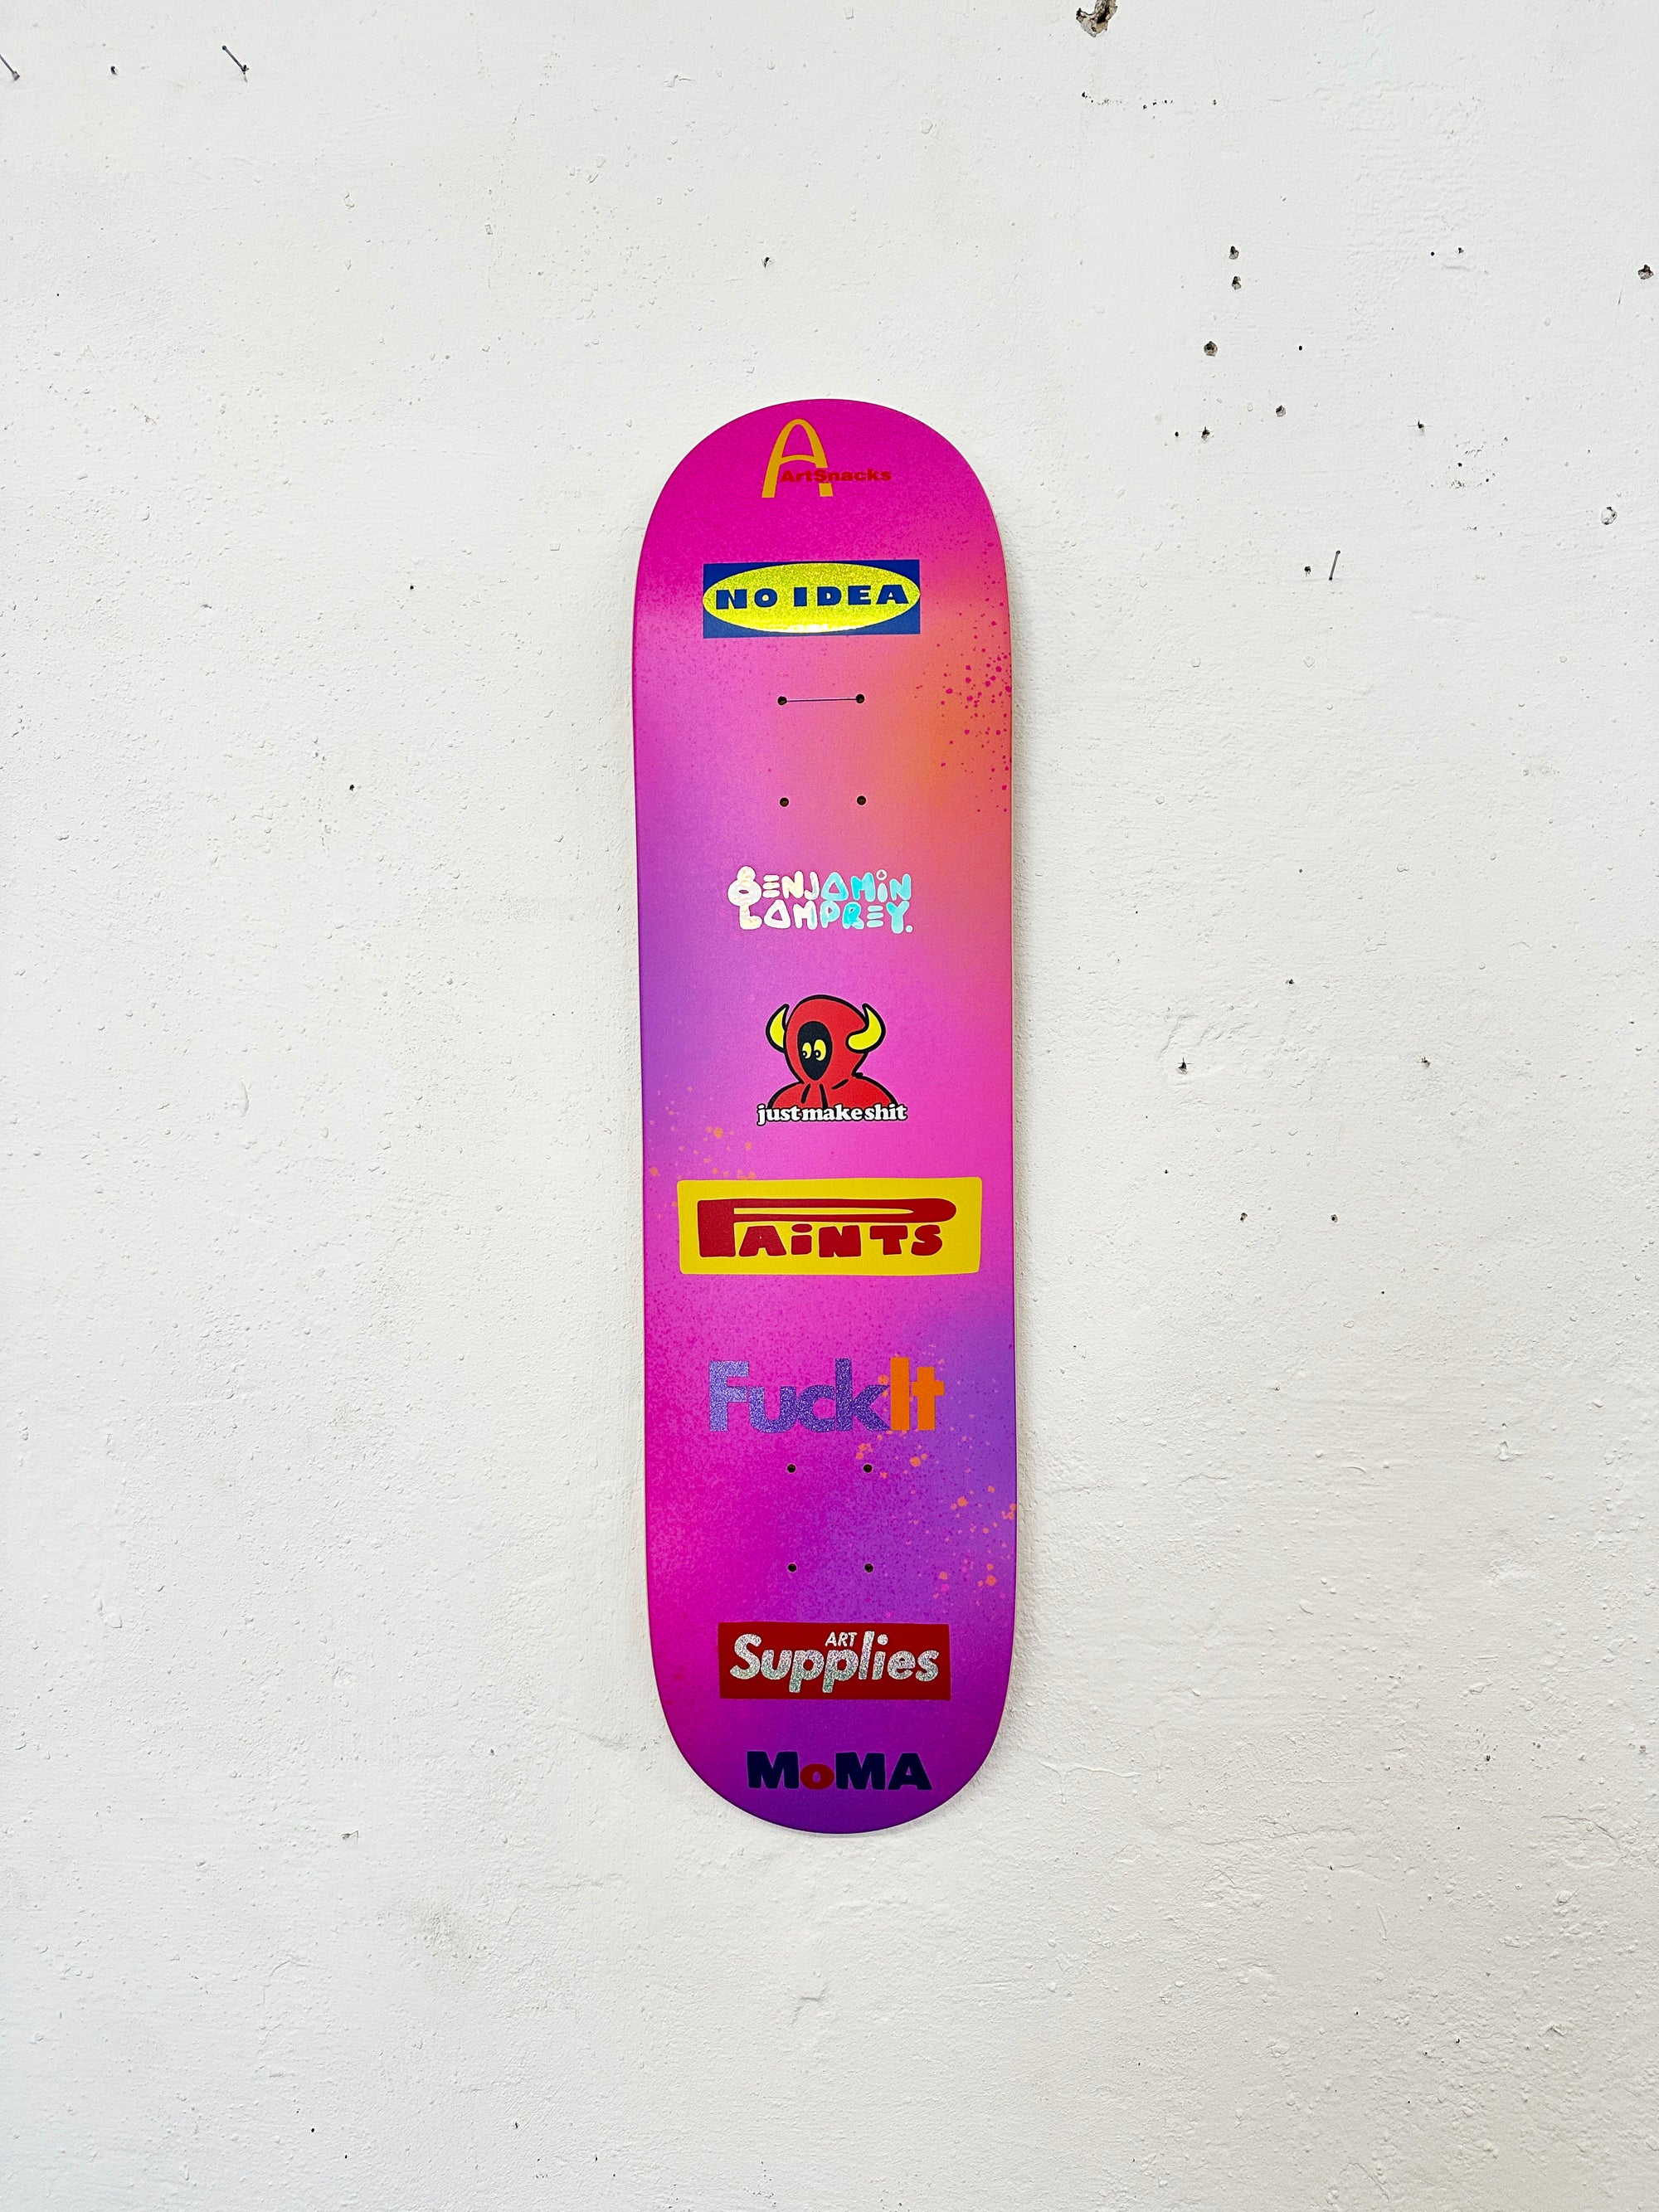 8enjamin Sponsored Skateboard Deck 1/4